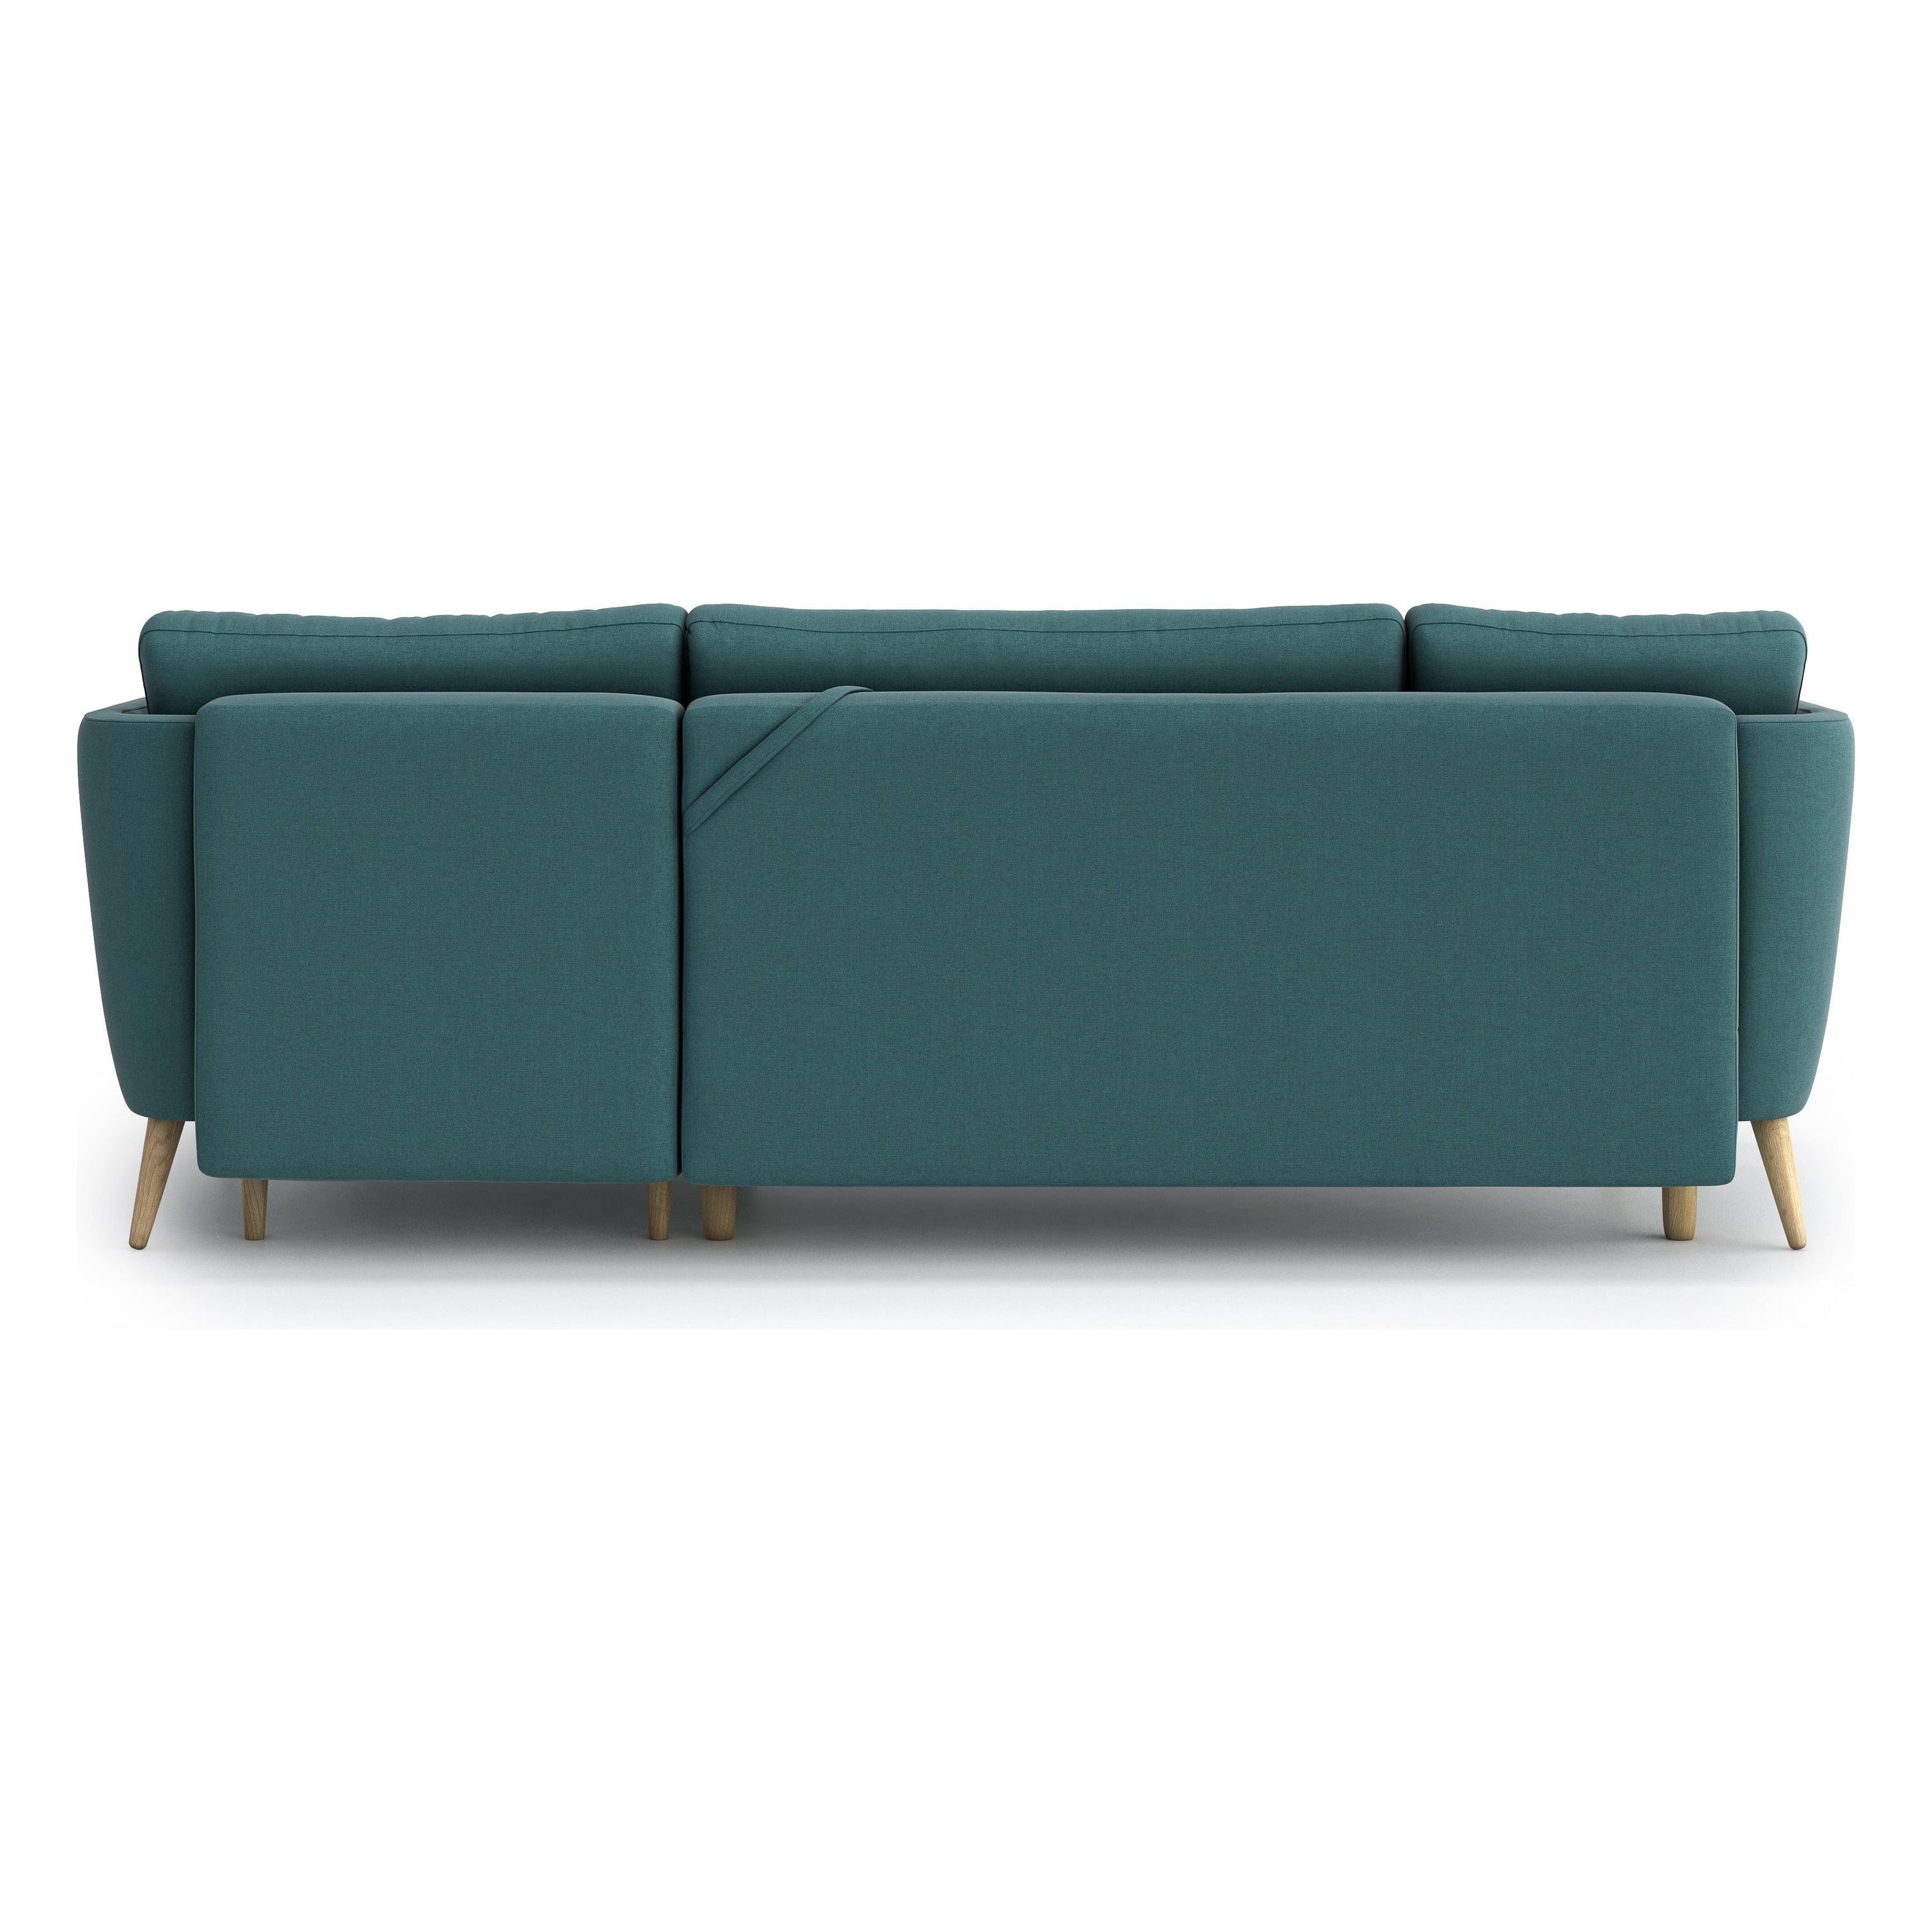 JANE kampinė sofa lova, turkio spalva, universali kampo pusė